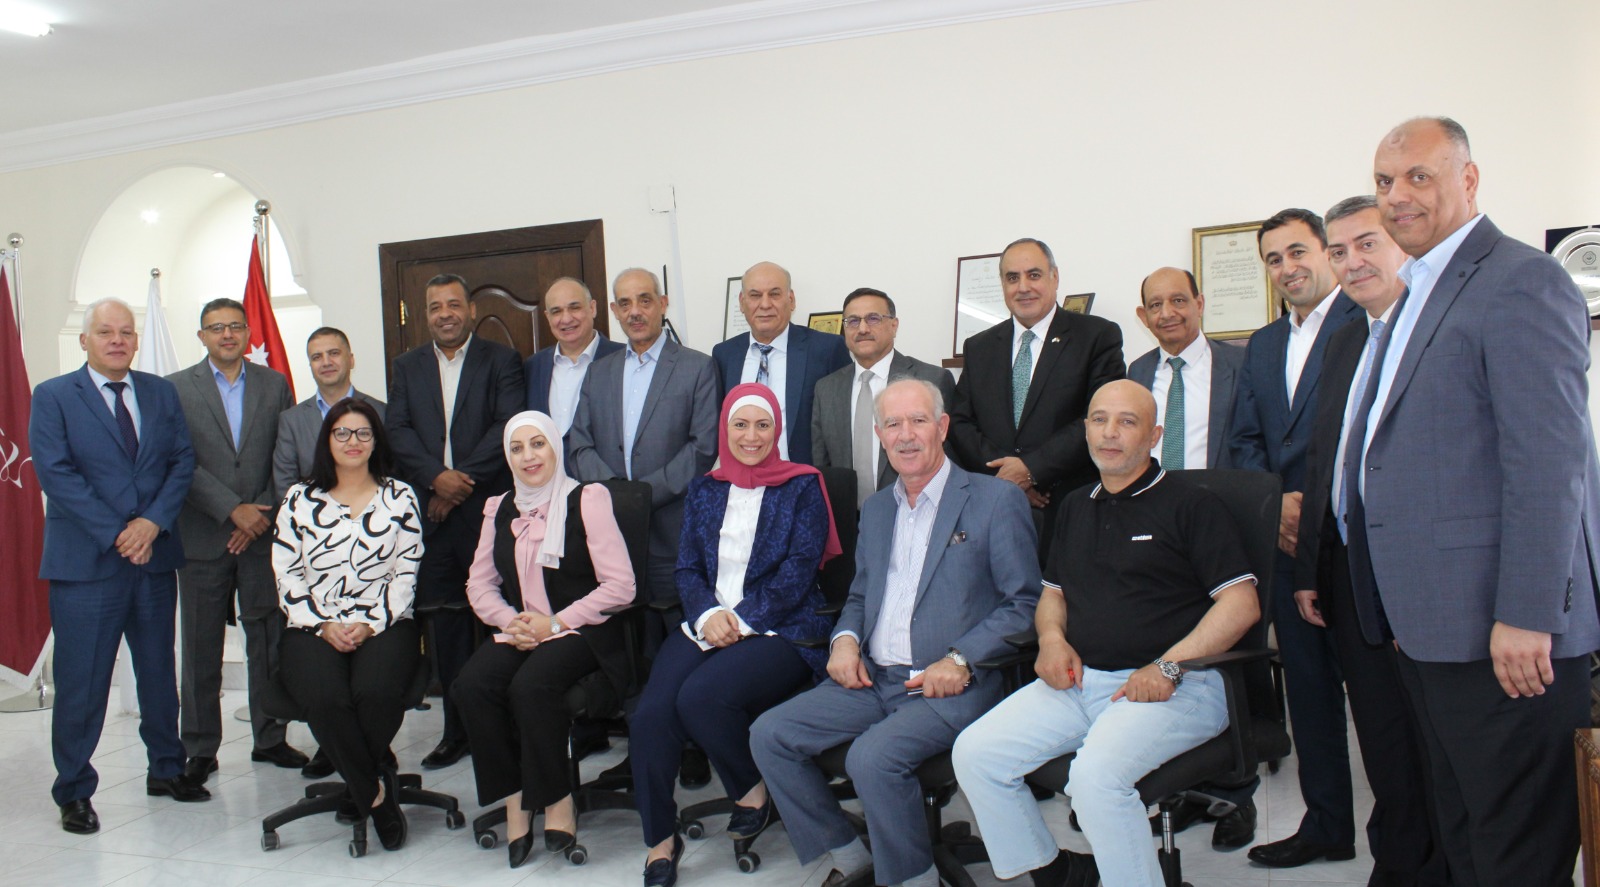 صندوق استثمار أموال الضمان يلتقي الاتحاد العام لنقابات عمال الأردن